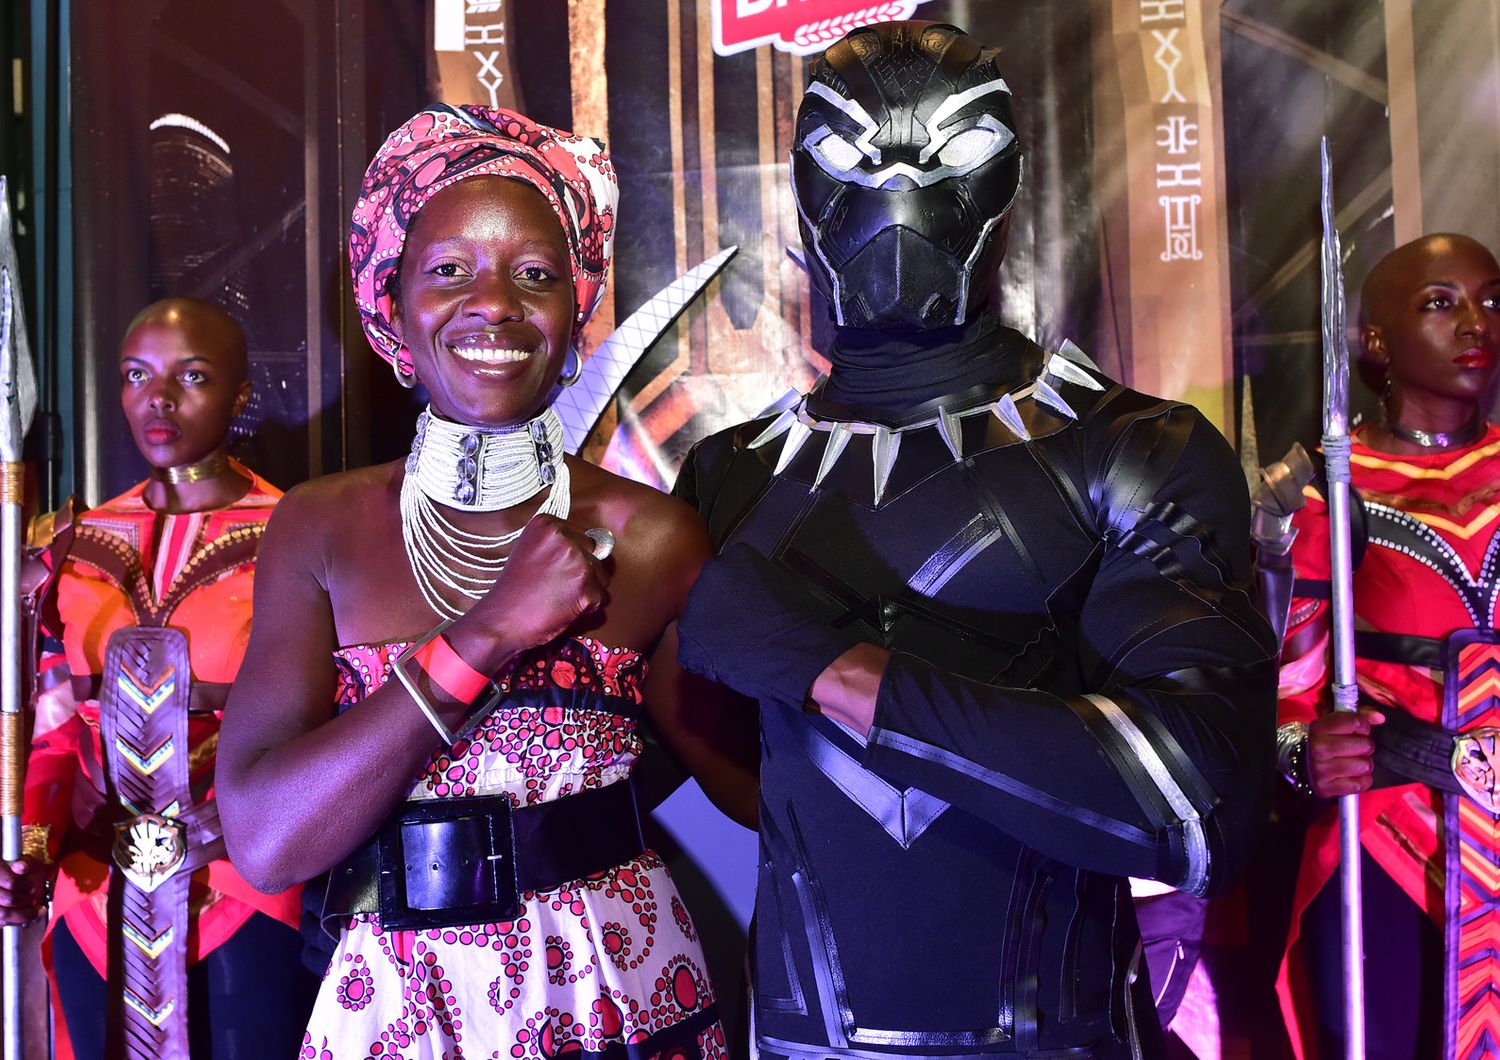 &nbsp;La sorella maggiore dell'attrice premio Oscar Lupita Nyong'o posa con il personaggio di Black Panther durante la prima del film a Nairobi&nbsp;